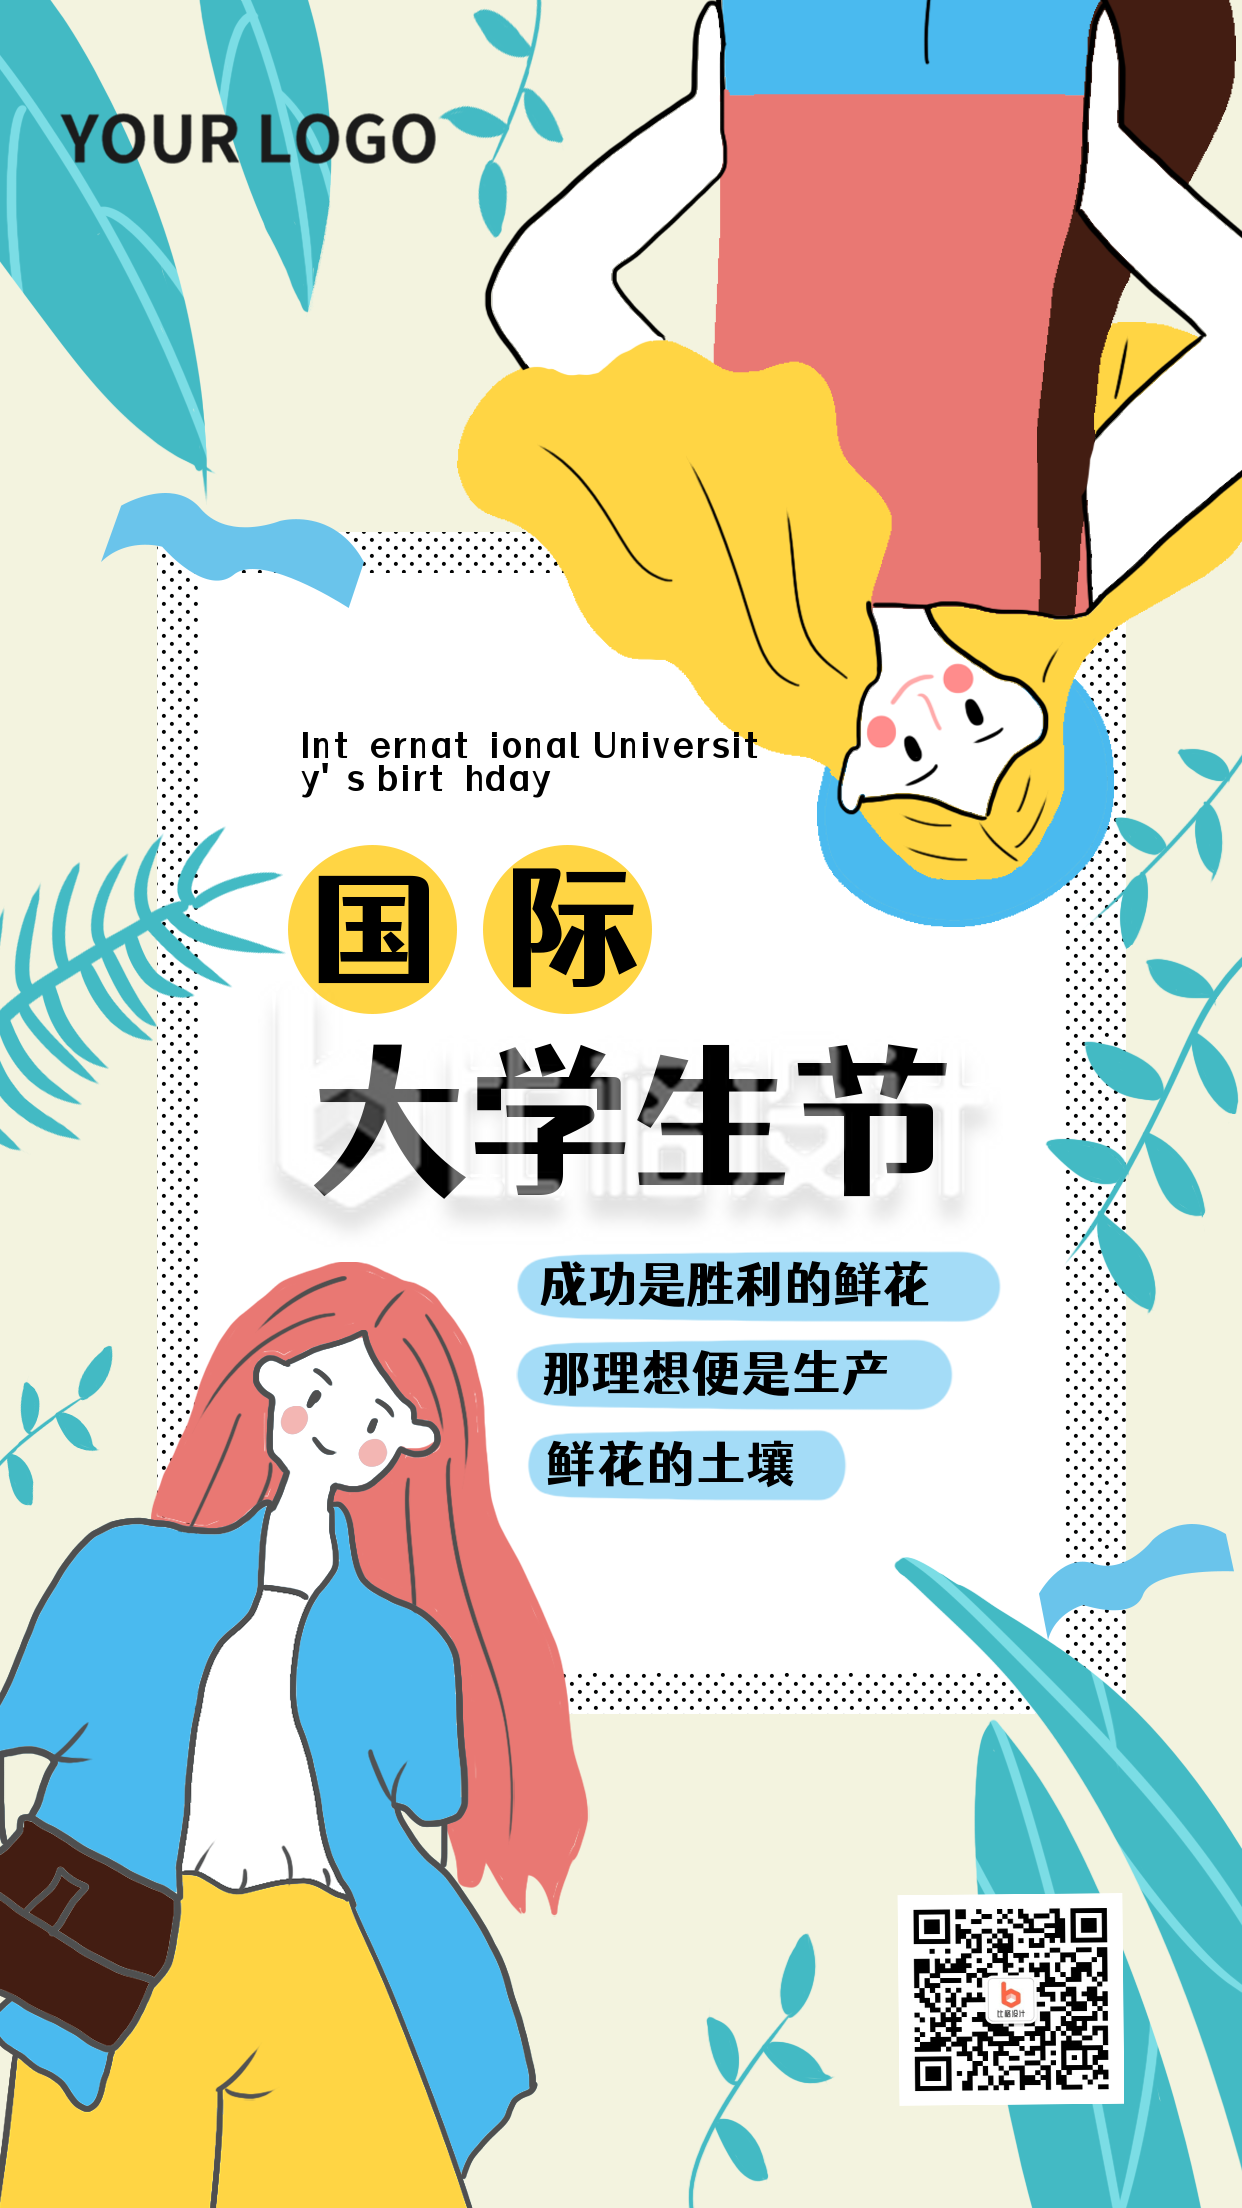 国际大学生节晚会青春活动手机海报